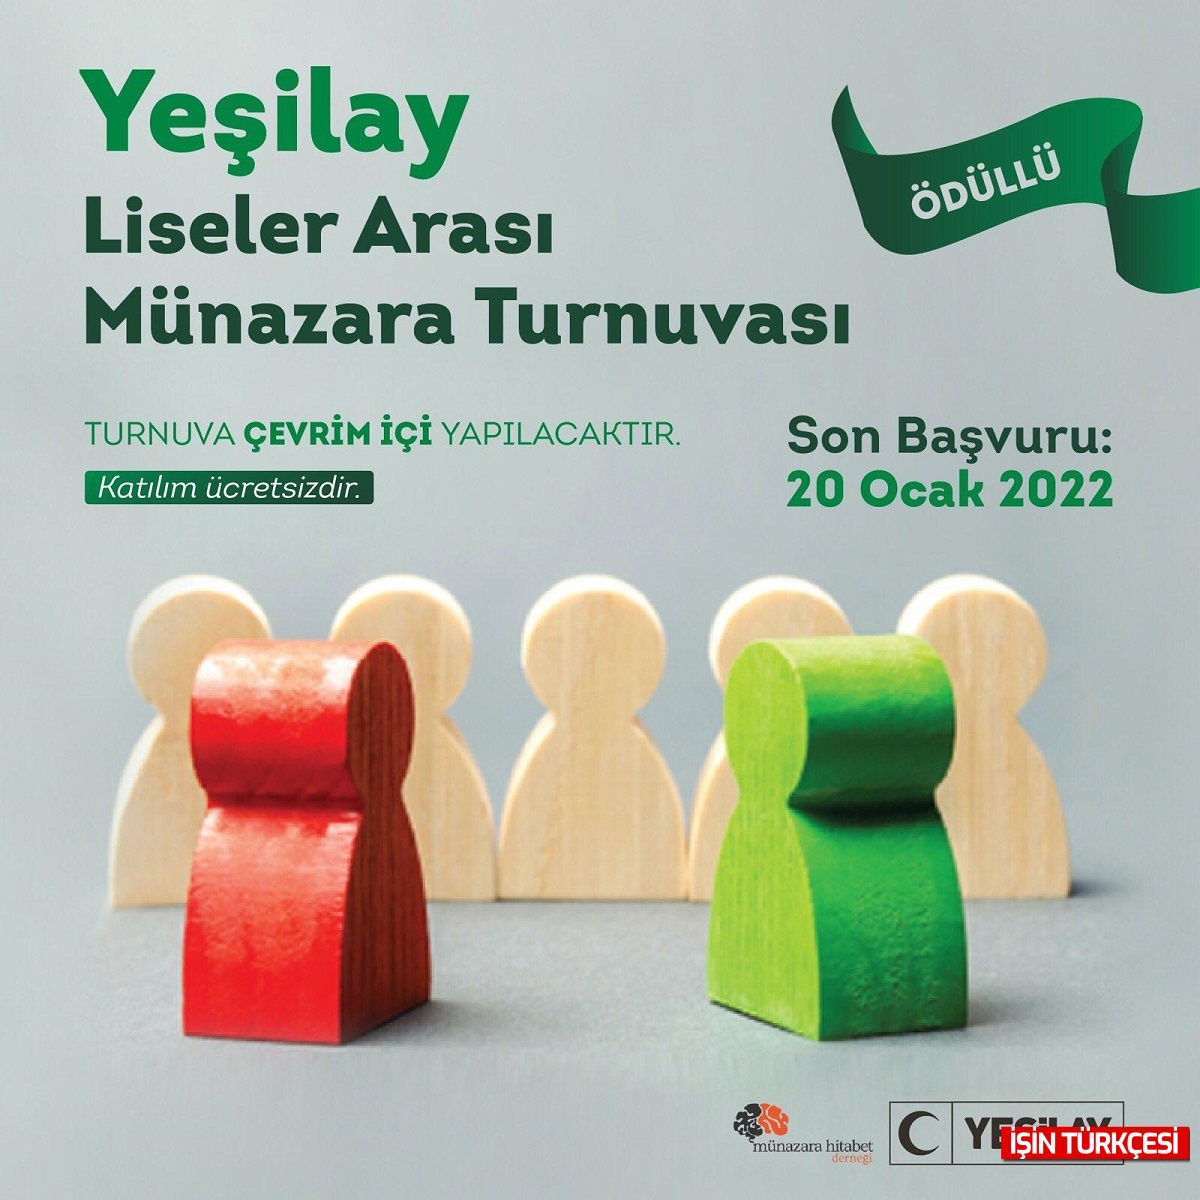 Yeşilay Türkiye Liseler arası turnuvalar başlıyor